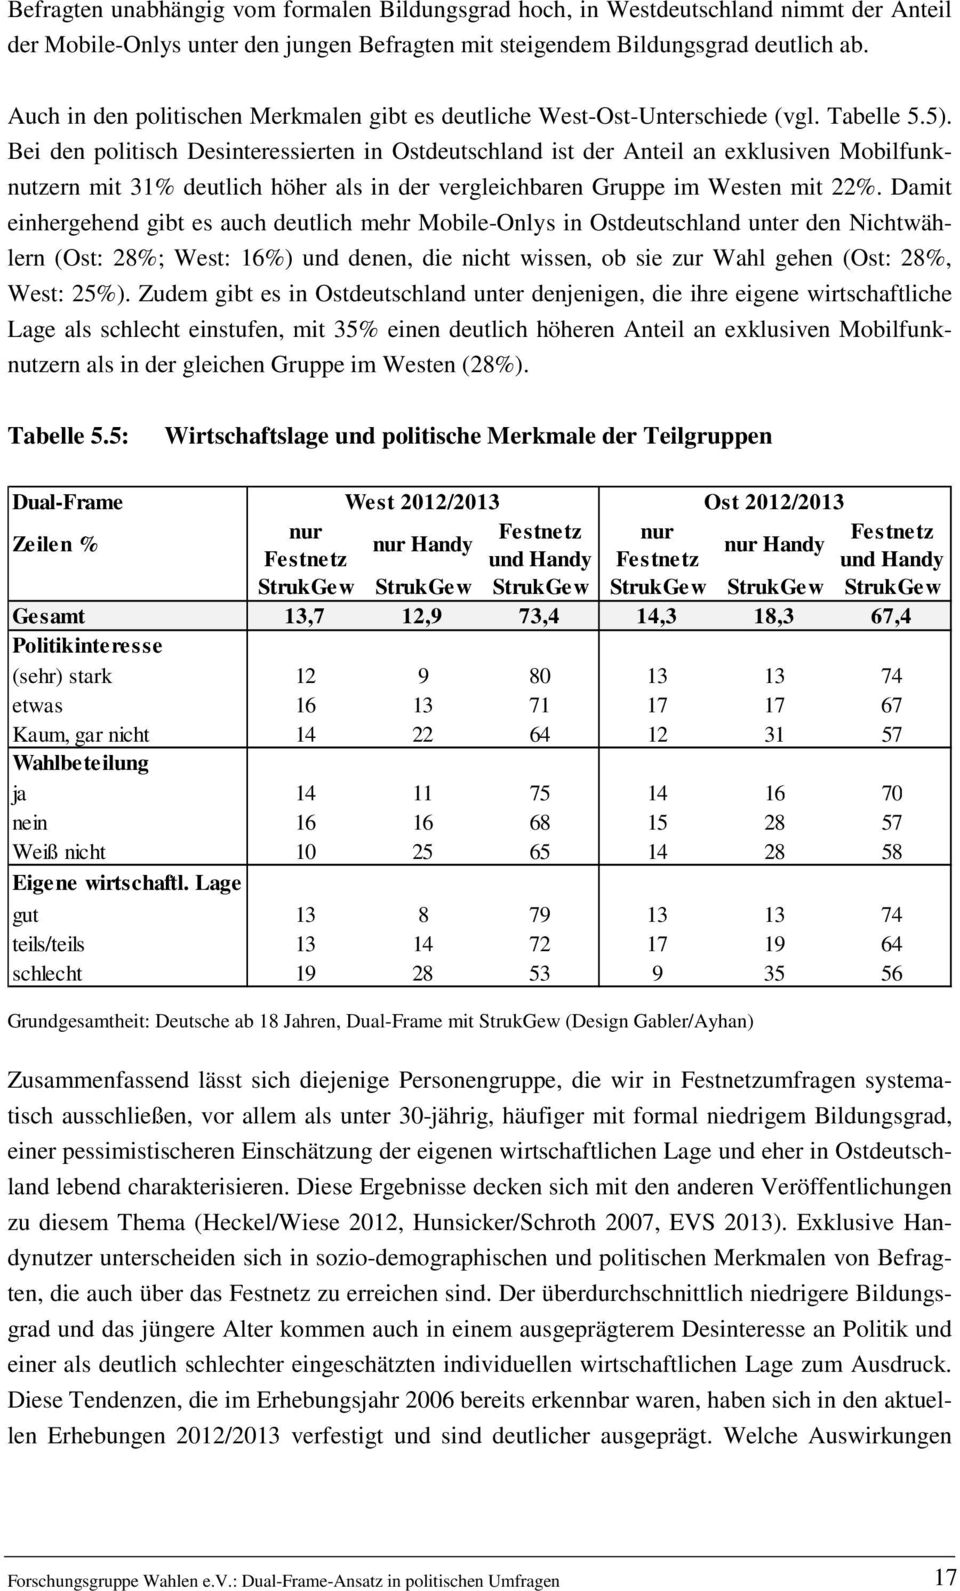 Bei den politisch Desinteressierten in Ostdeutschland ist der Anteil an exklusiven Mobilfunknutzern mit 31% deutlich höher als in der vergleichbaren Gruppe im Westen mit 22%.